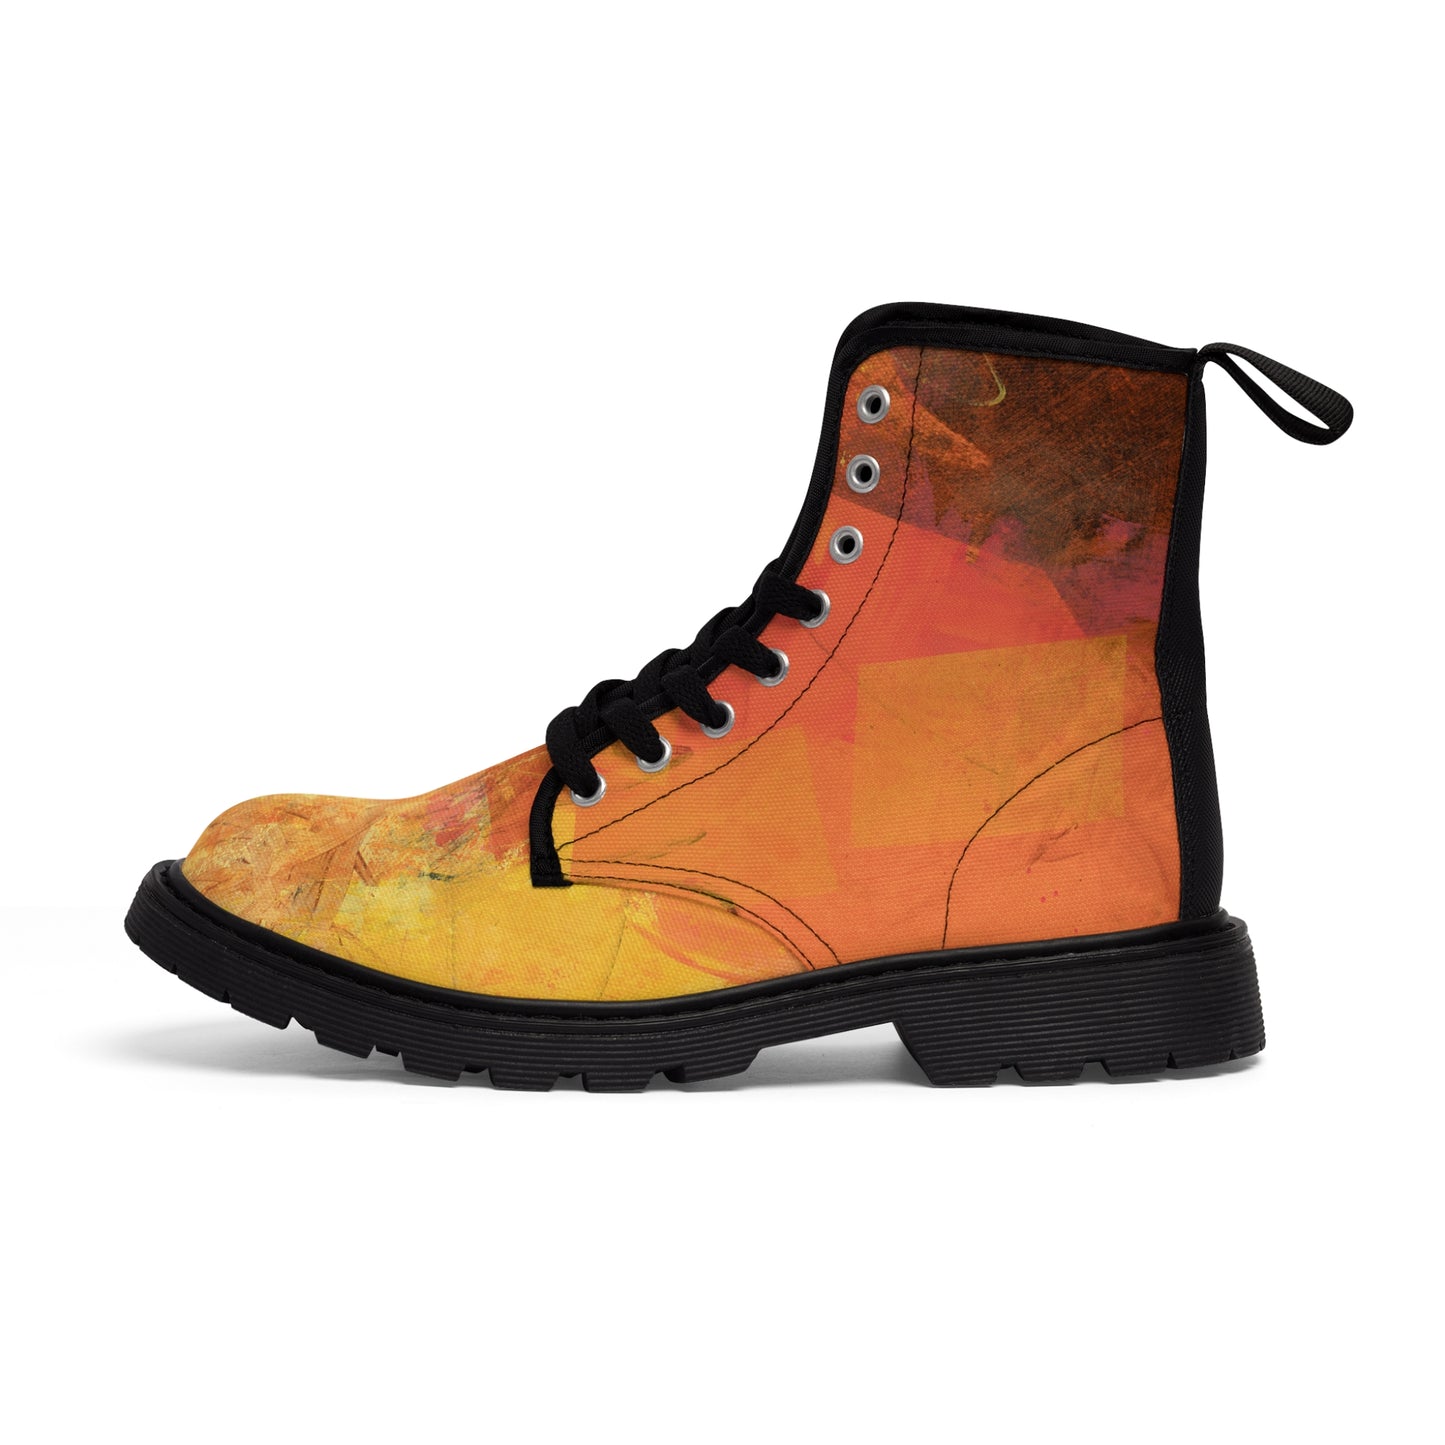 Men's Canvas Boots - 02875 US 10.5 Black sole